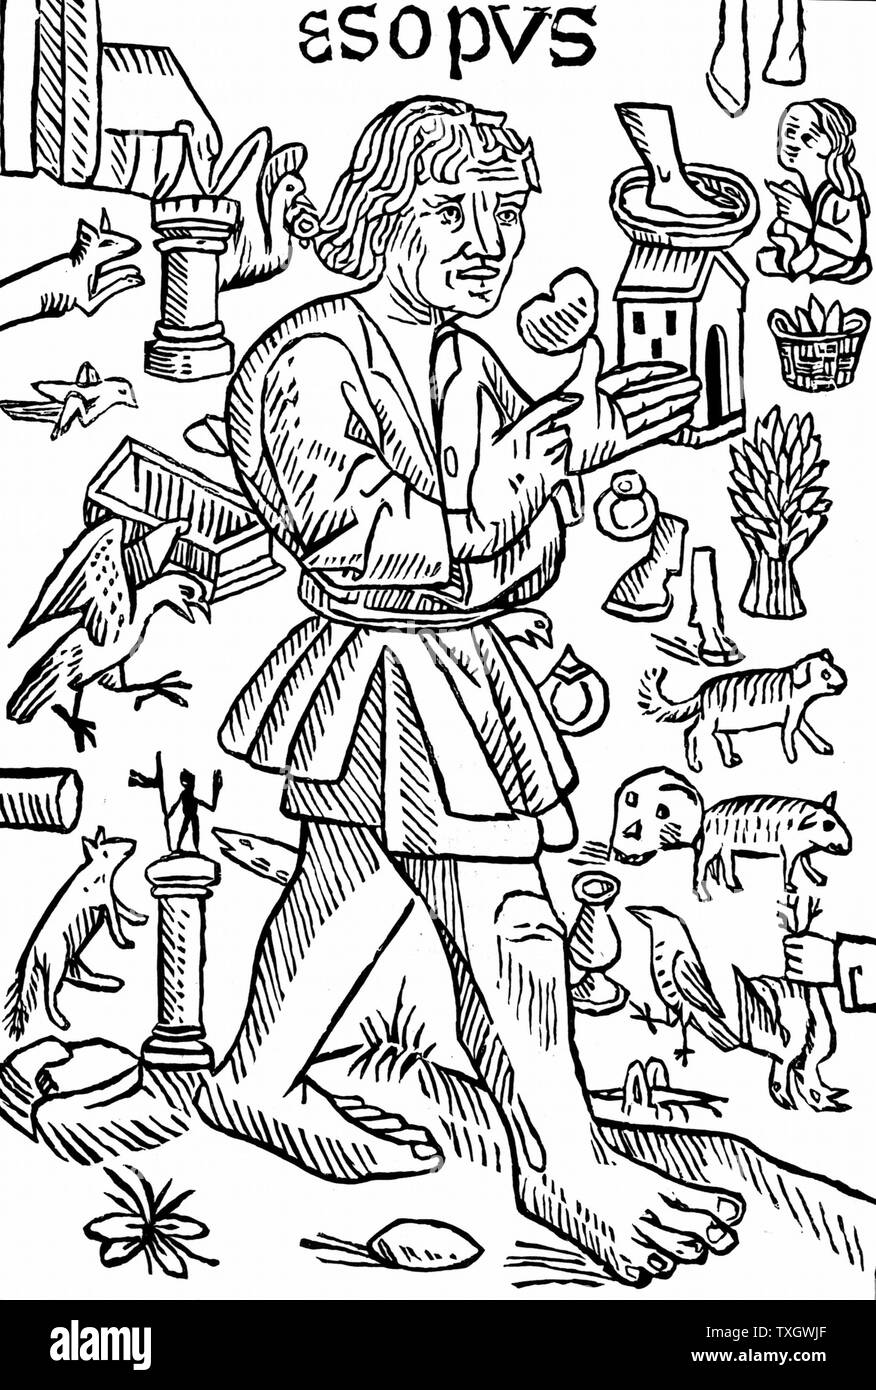 Aesop - vermutlich legendären griechischen fabulist, Herodot zufolge lebte er 6. Jahrhundert v. Chr.. Frontispiz von William Caxton' Fabeln von Aesop', London c 1480. Holzschnitt Stockfoto